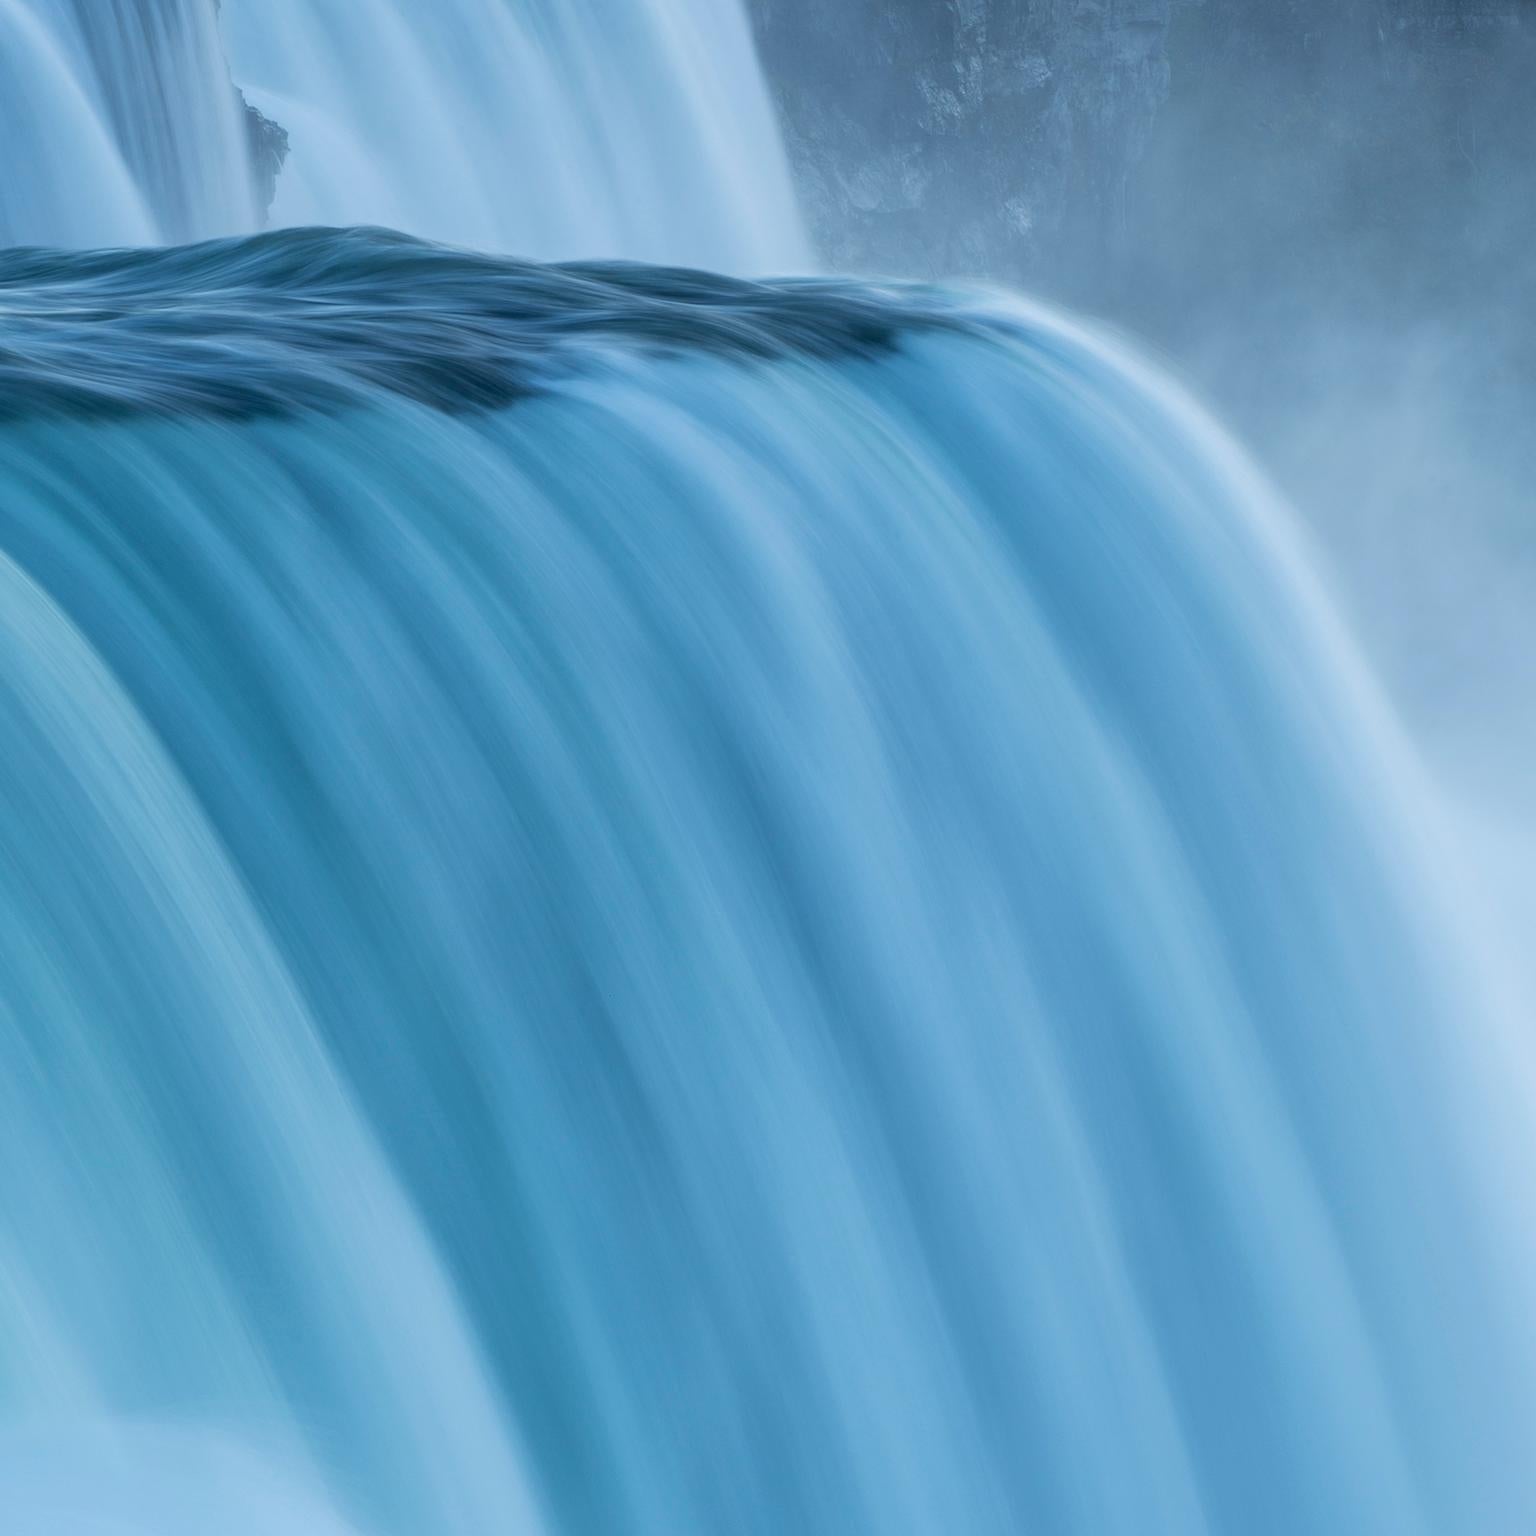 The American Falls, Niagara Falls, New York, USA. - Blue Color Photograph by Cosmo Condina